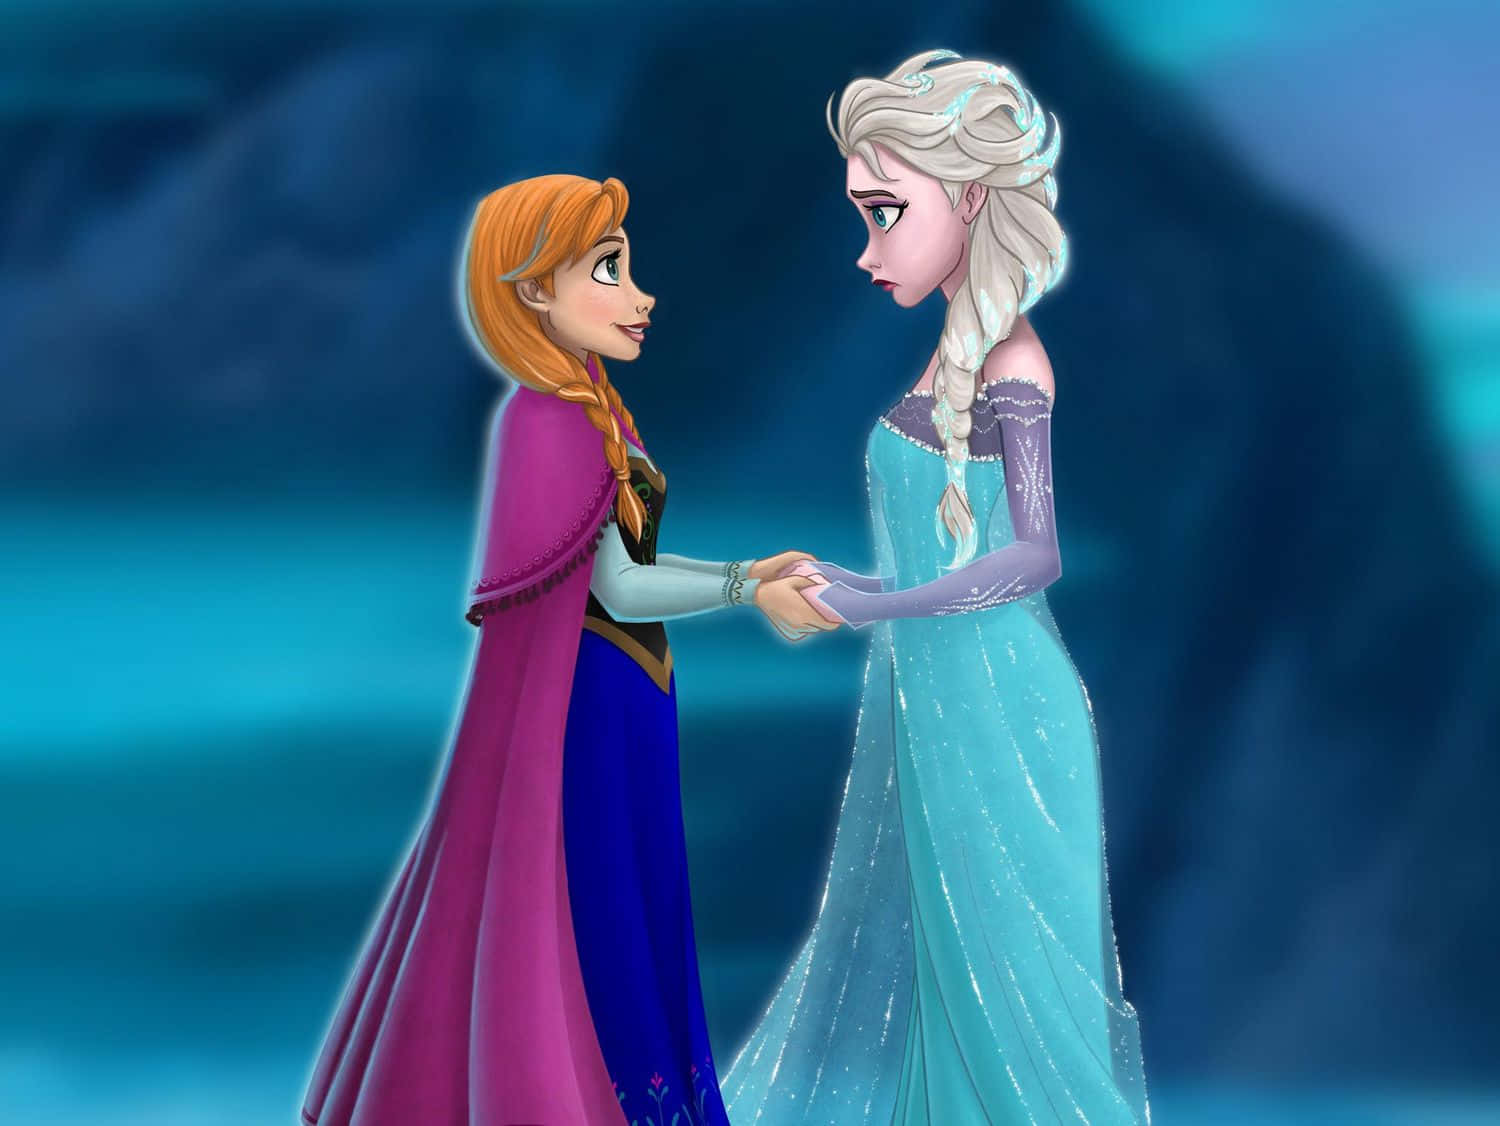 Ilpotere Di Elsa Di Frozen